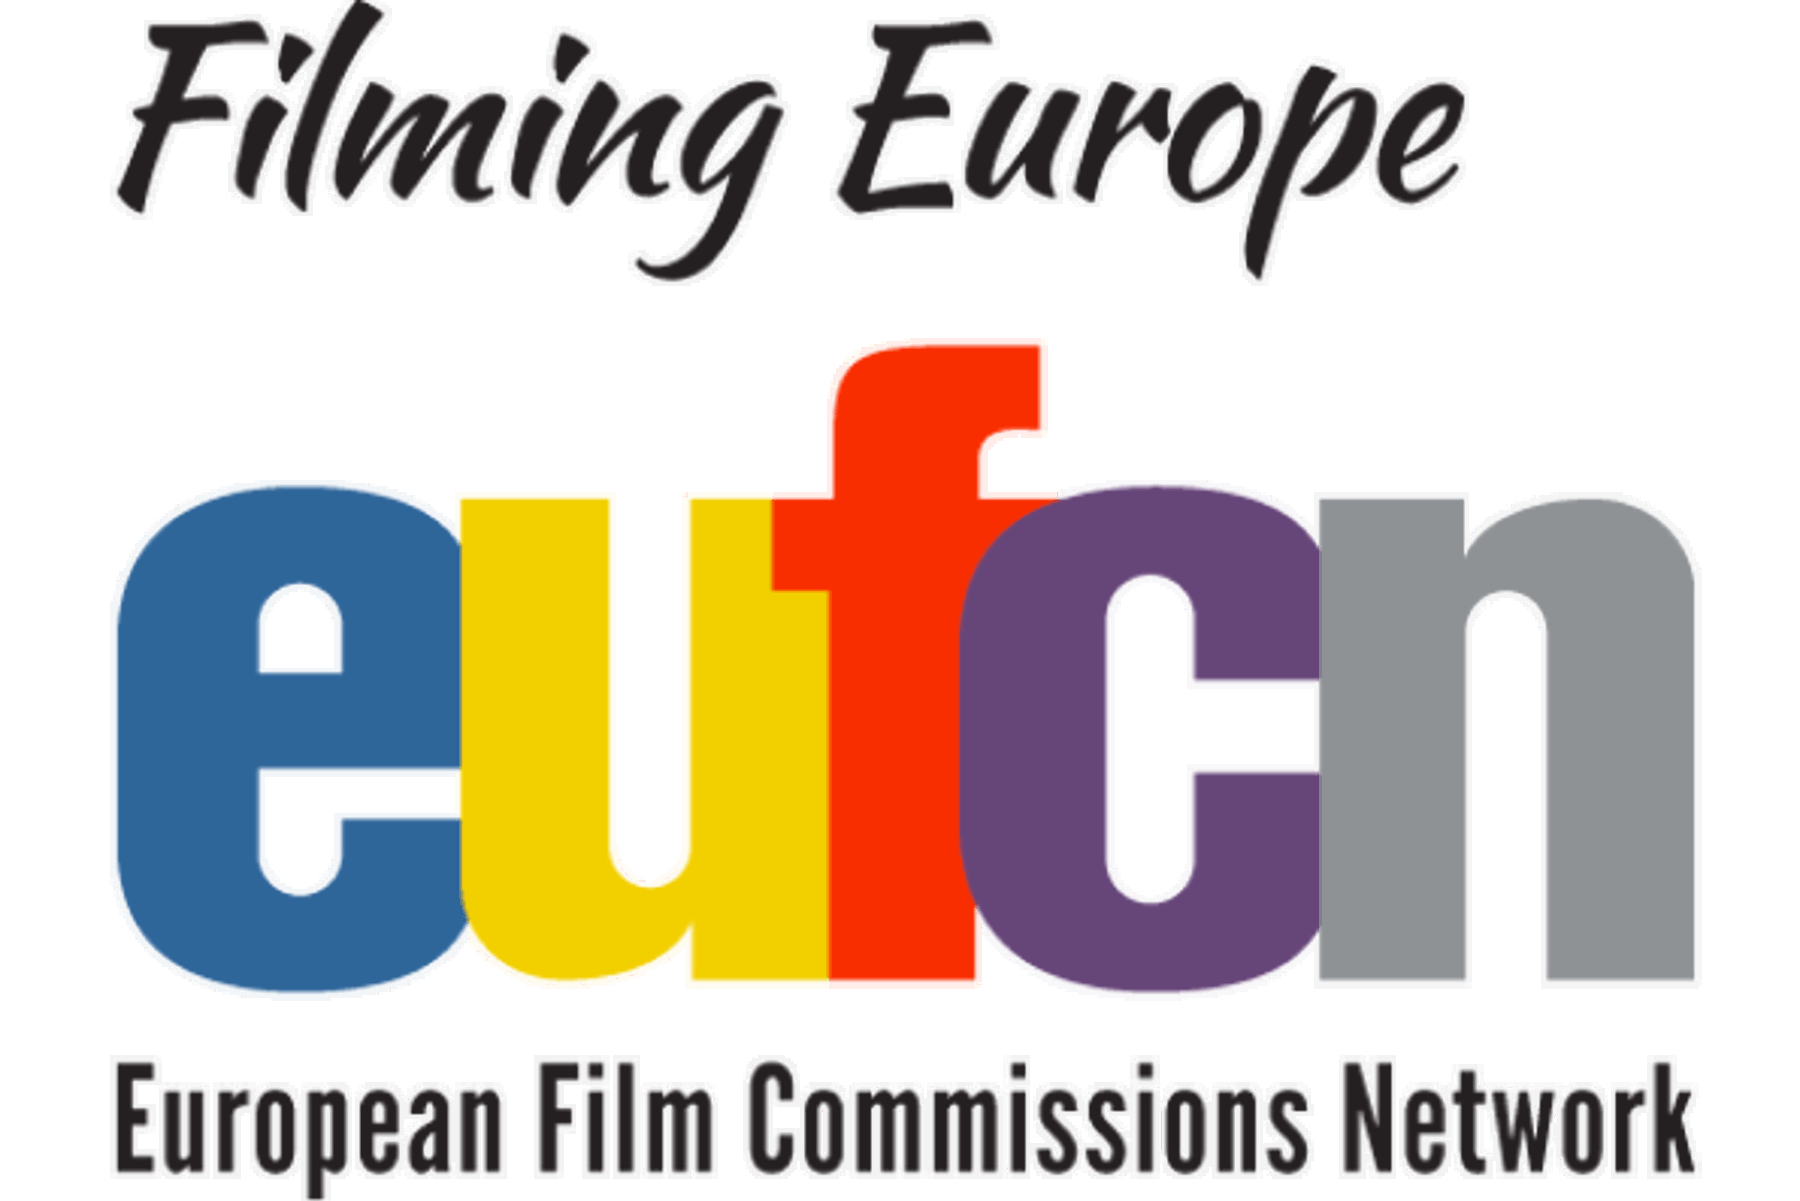 Obrázek /media/rcedz3kh/logo-eufcn.png